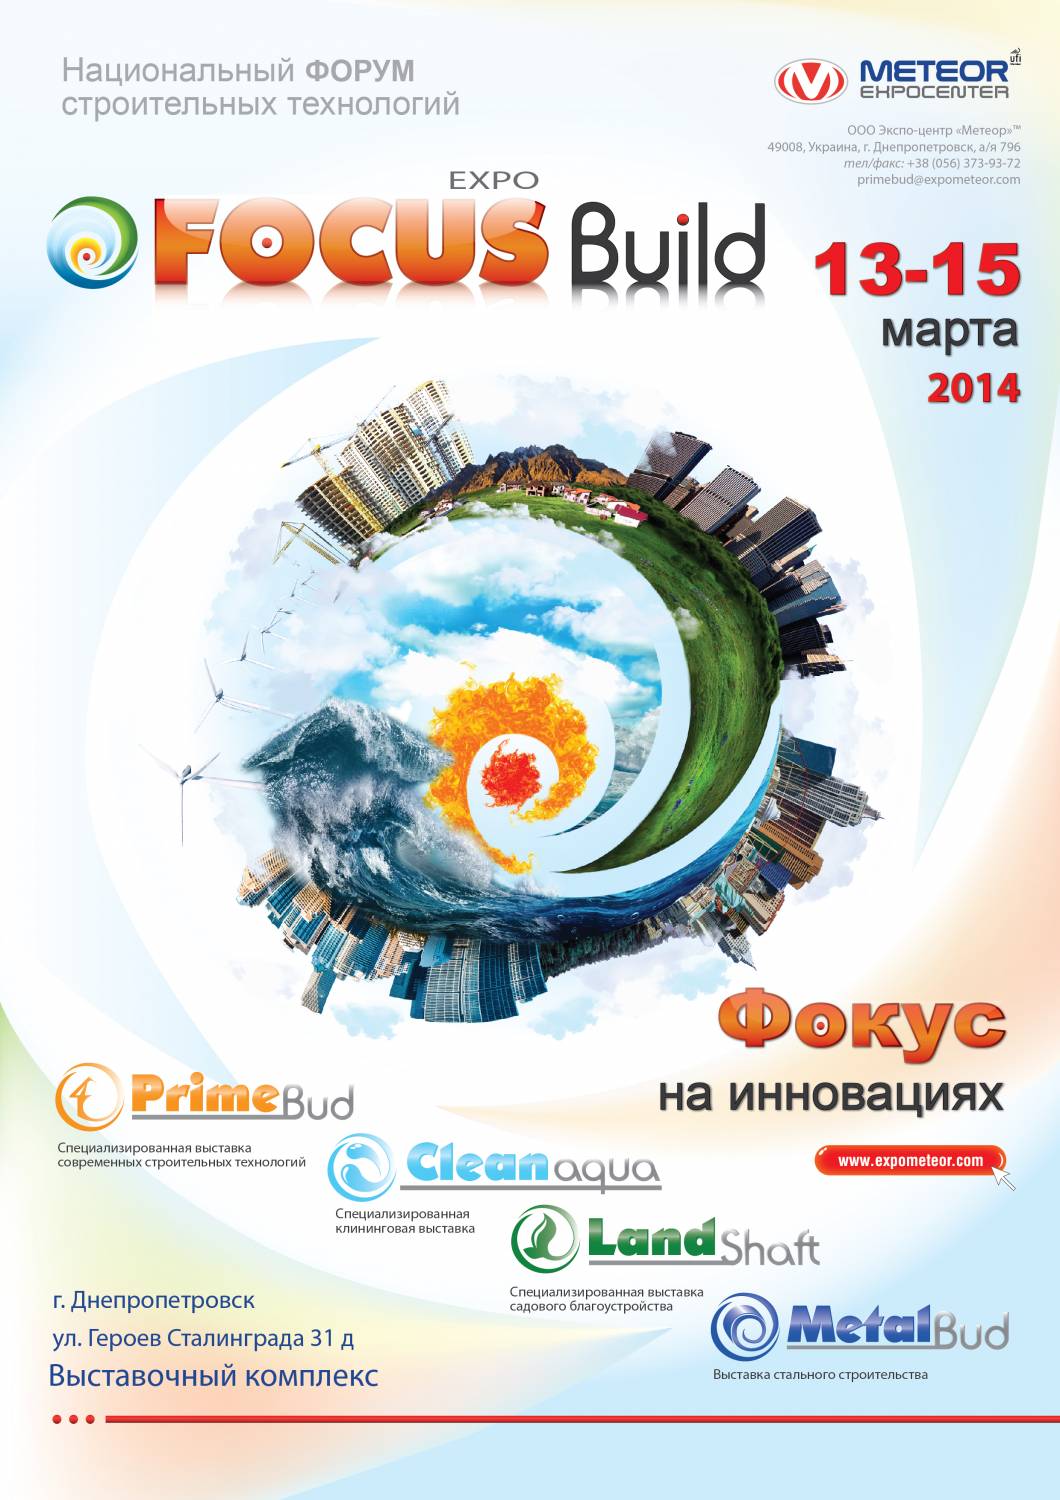 Впервые в Днепропетровске будет проходить Национальный форум строительных технологий «FocusBuildexpo»